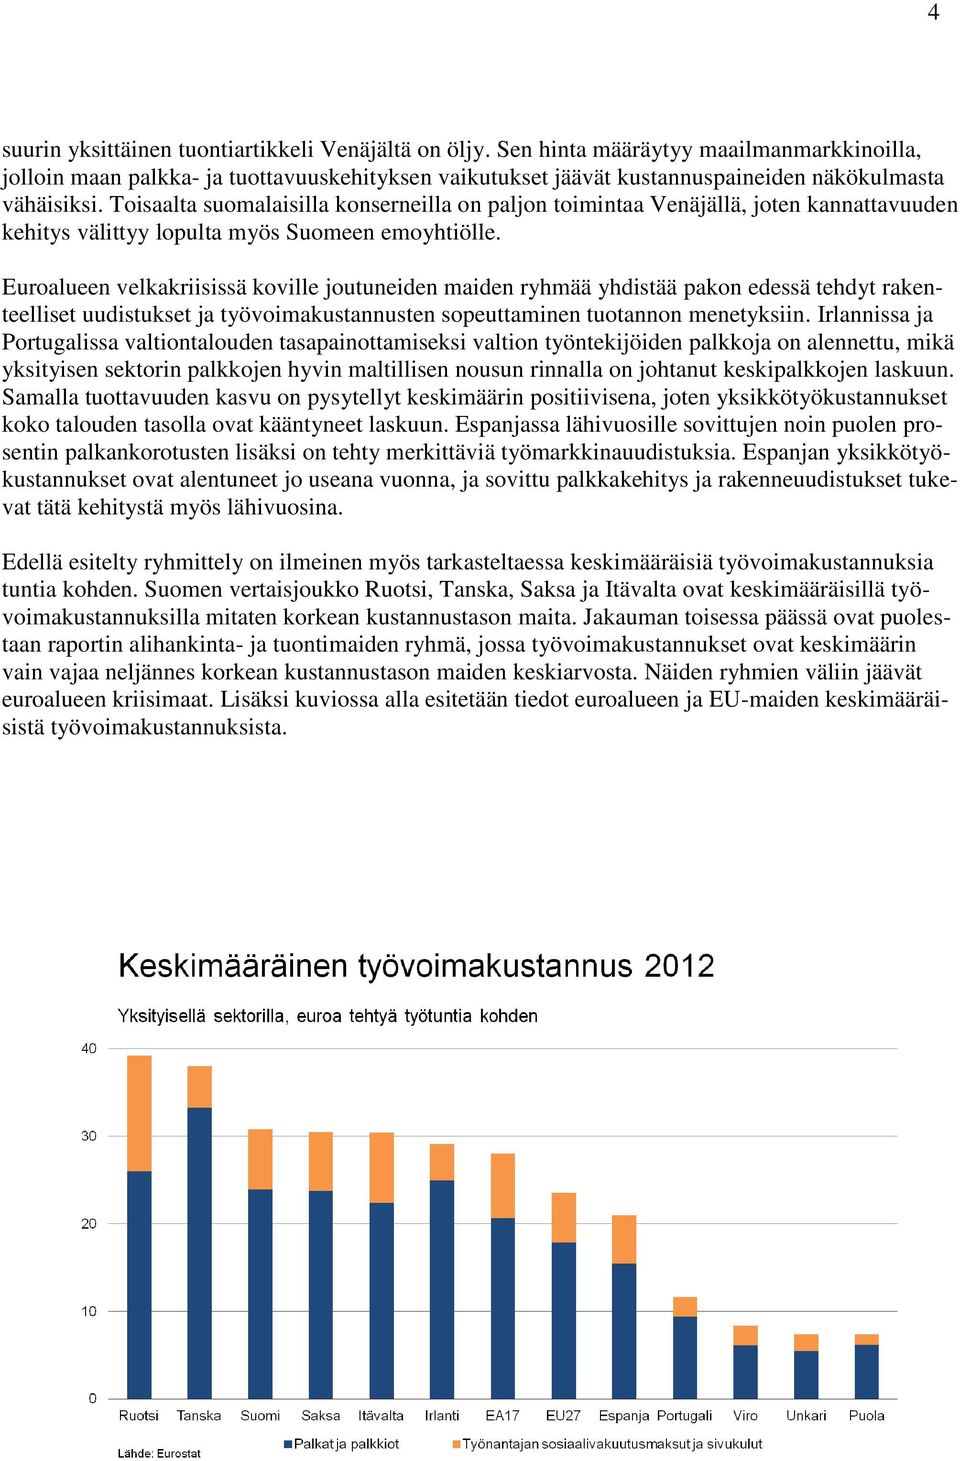 Toisaalta suomalaisilla konserneilla on paljon toimintaa Venäjällä, joten kannattavuuden kehitys välittyy lopulta myös Suomeen emoyhtiölle.